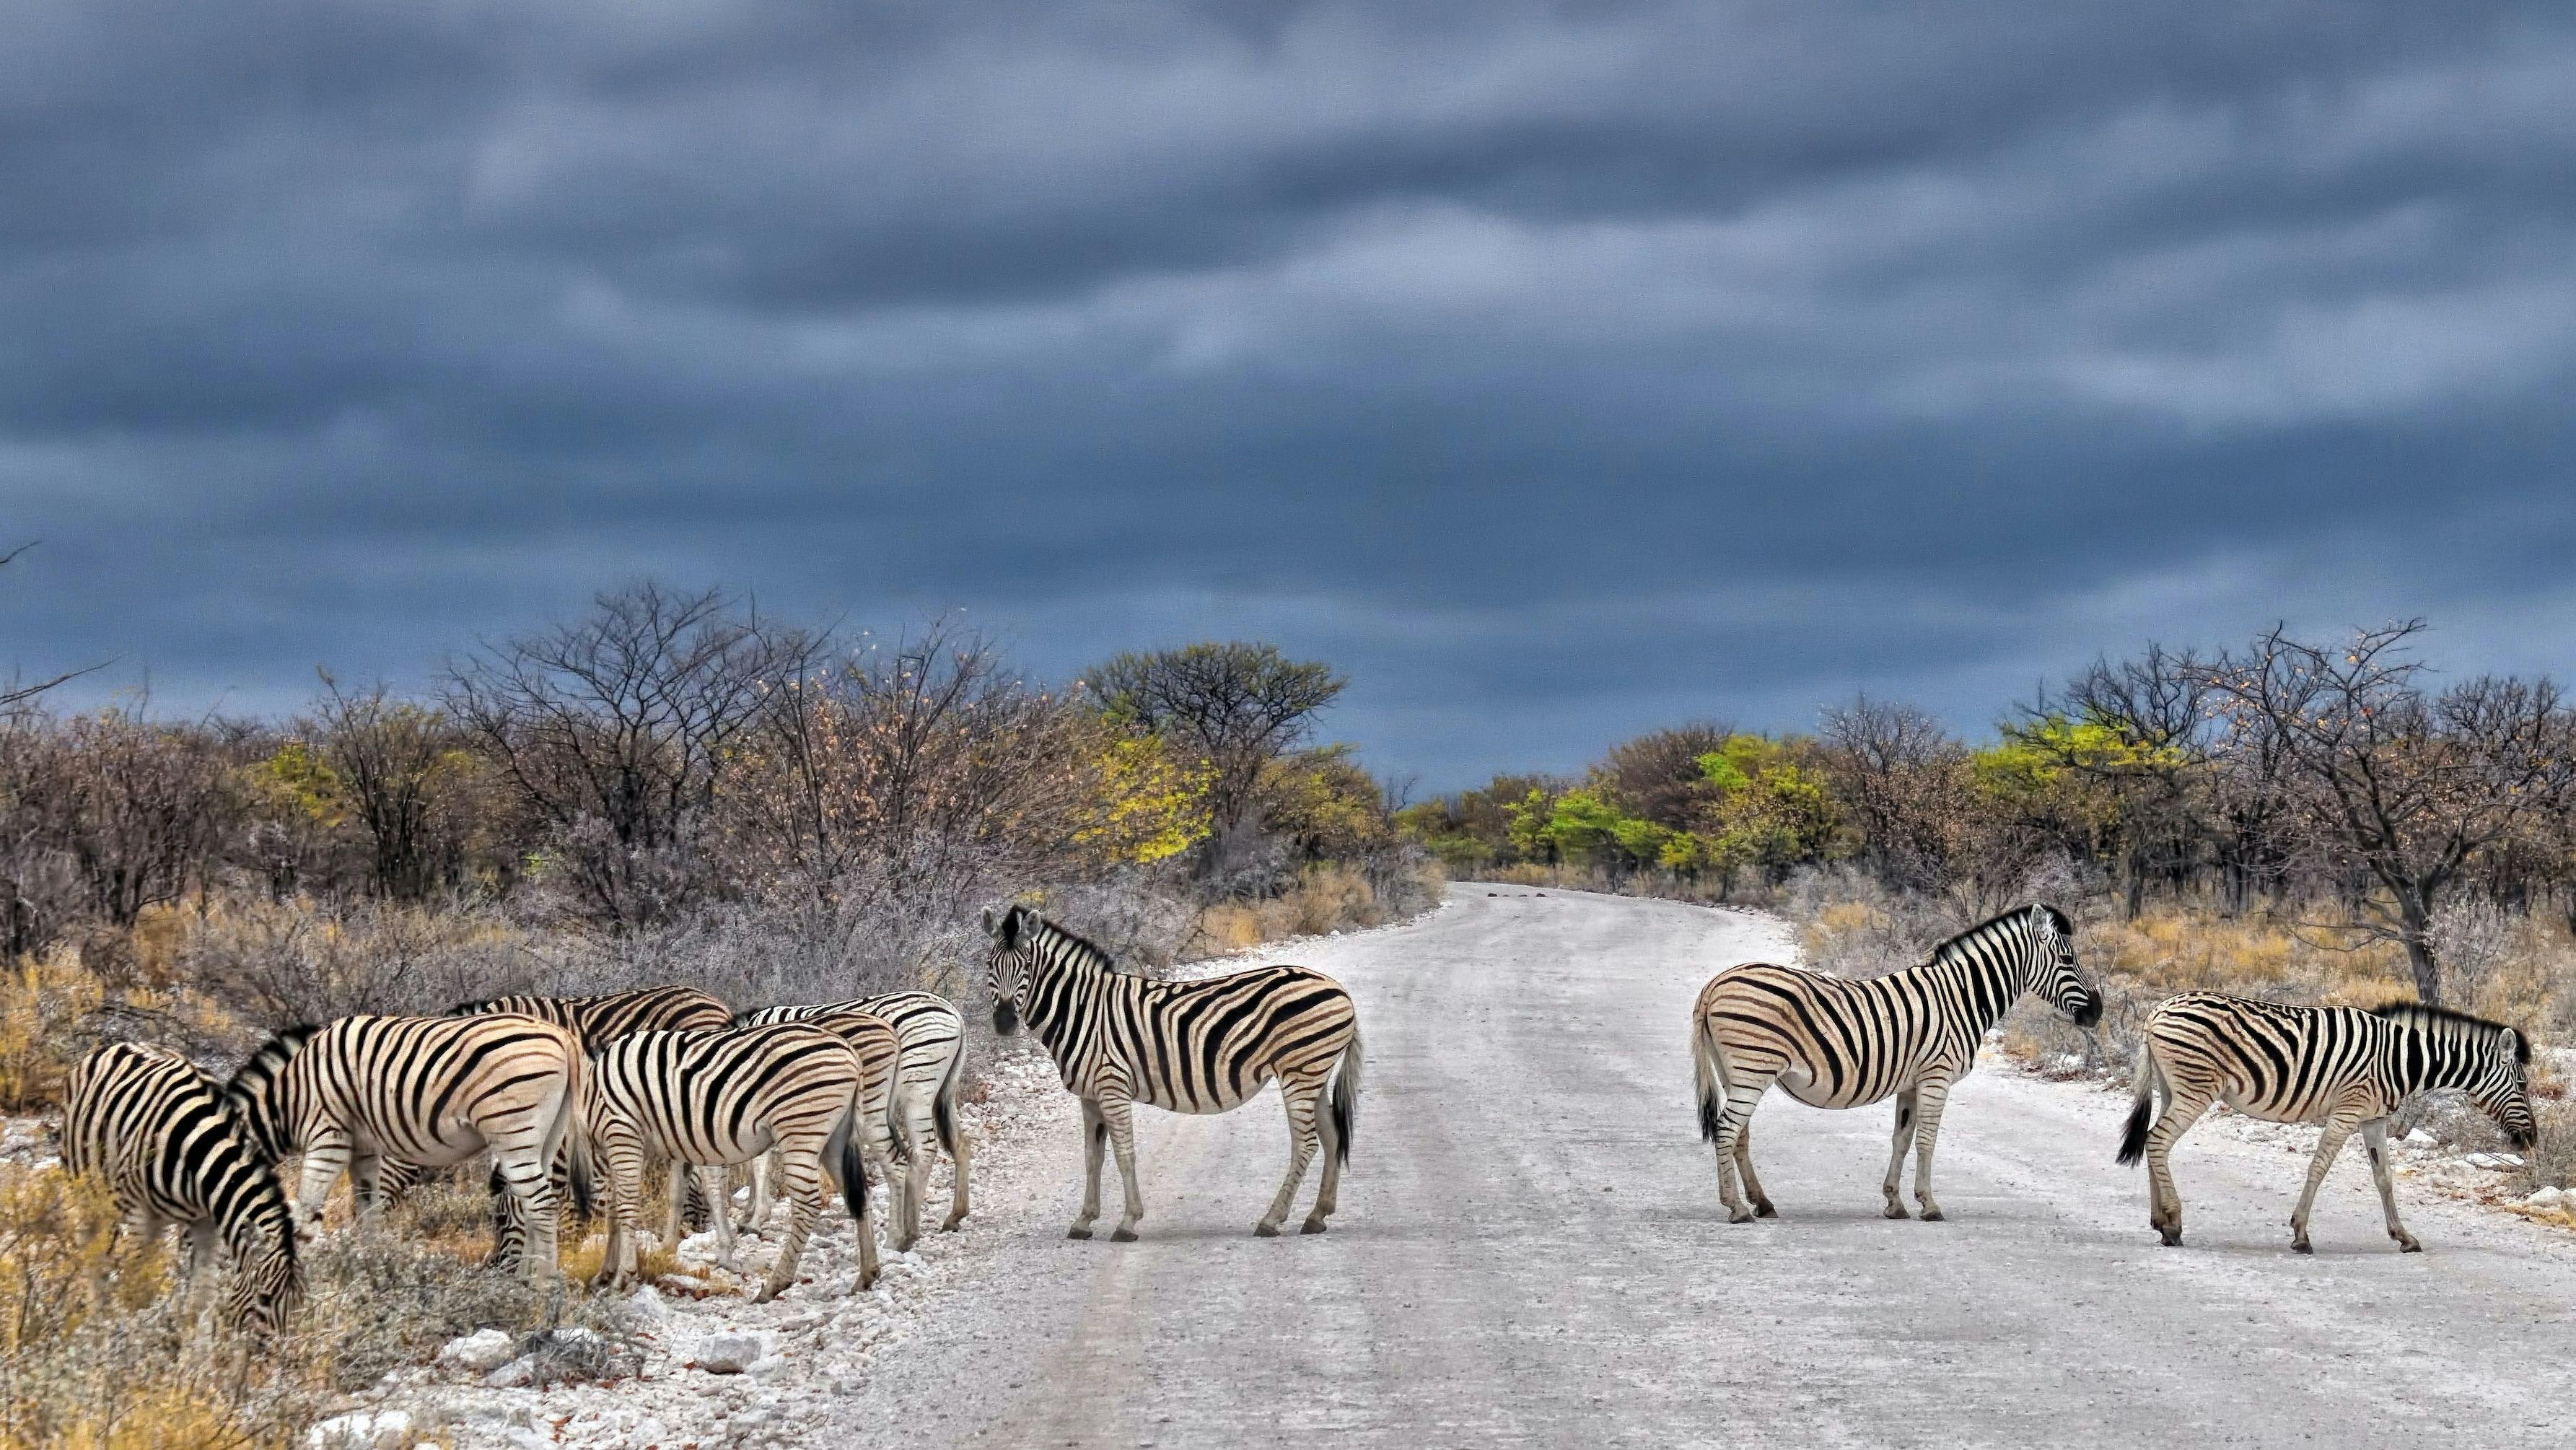 Zebras in Etosha national park in Namibia.